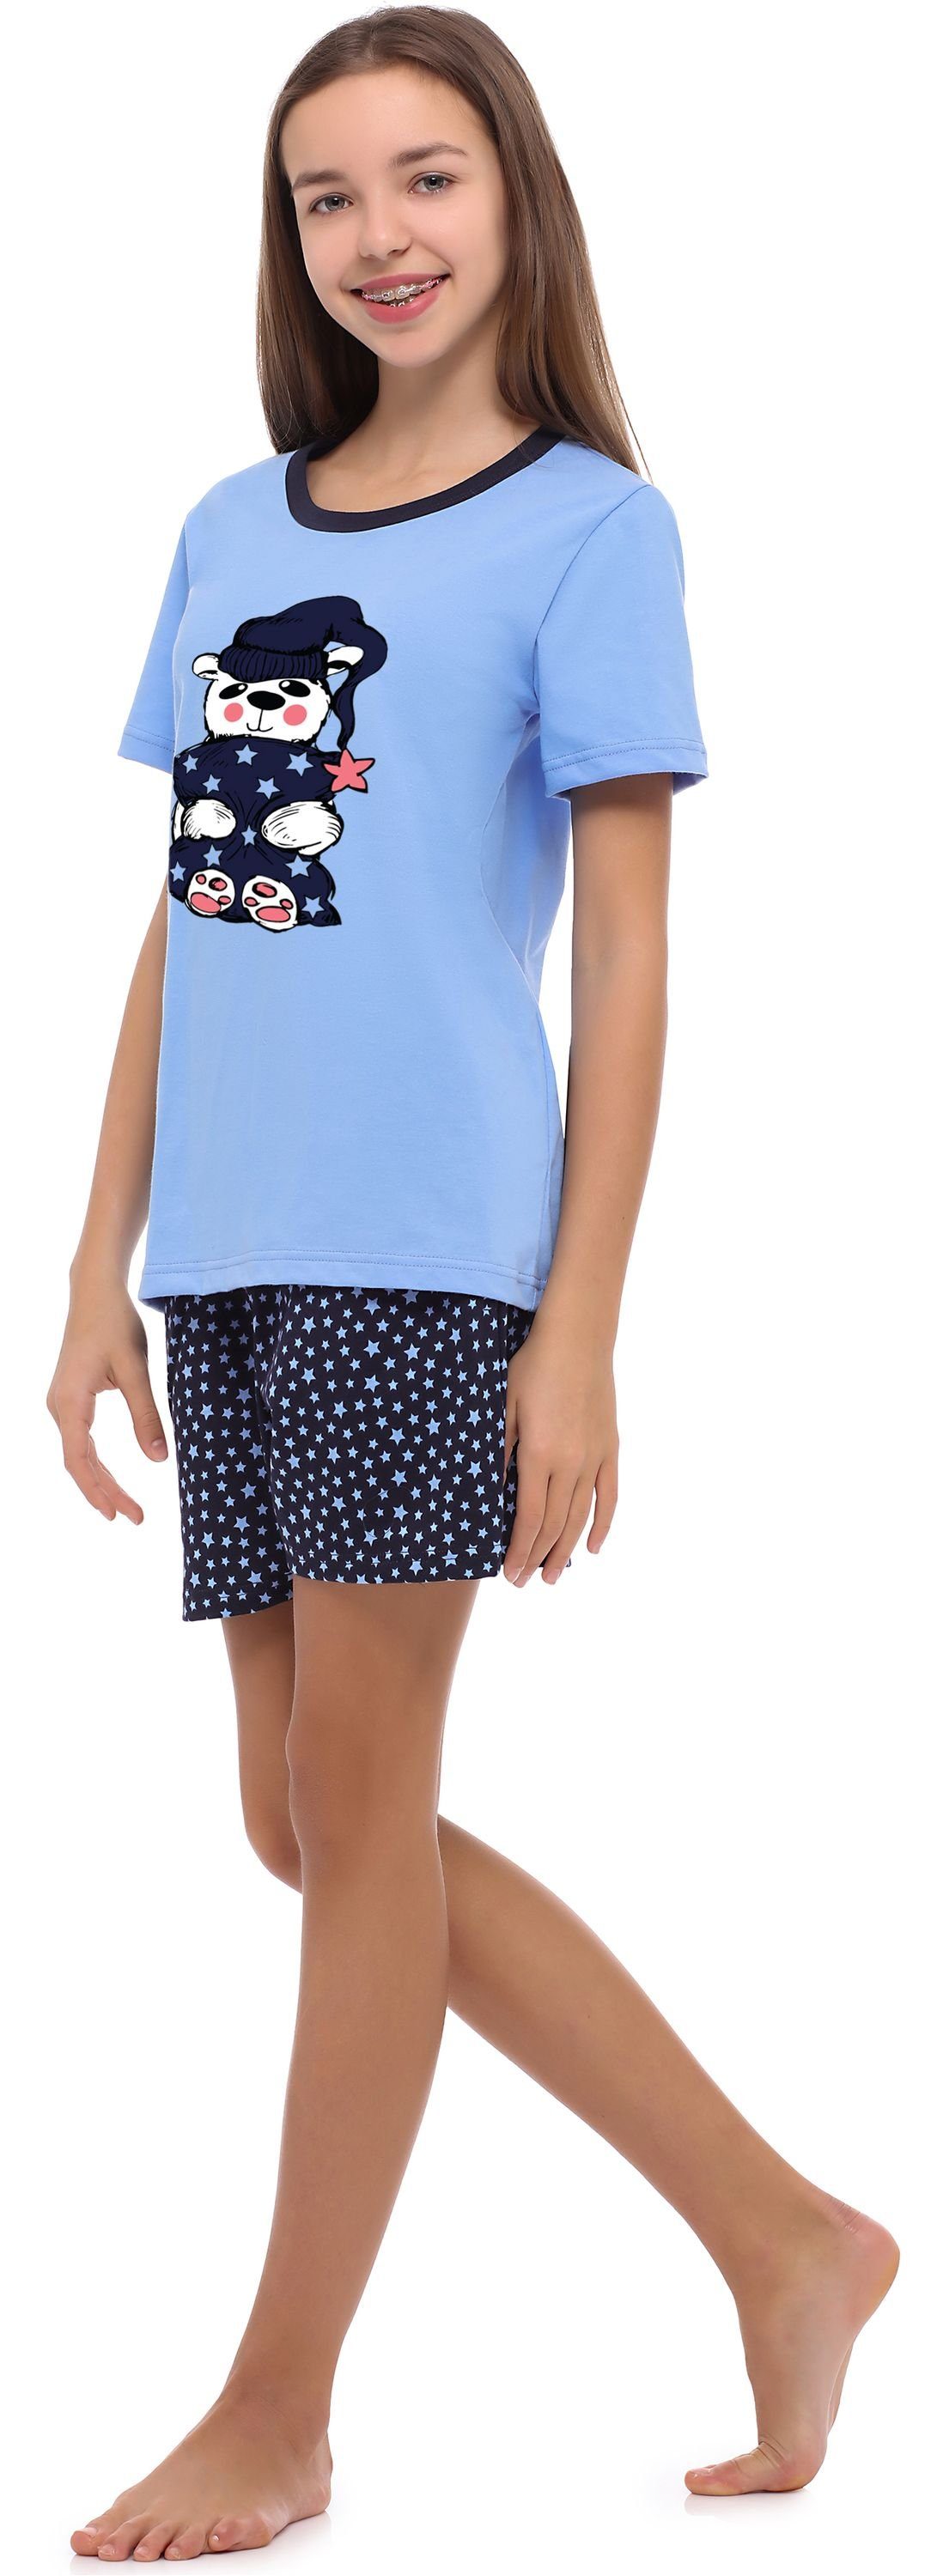 Schlafanzug Schlafanzug Style MS10-241 Mädchen Jugend Merry Blau/Sterne